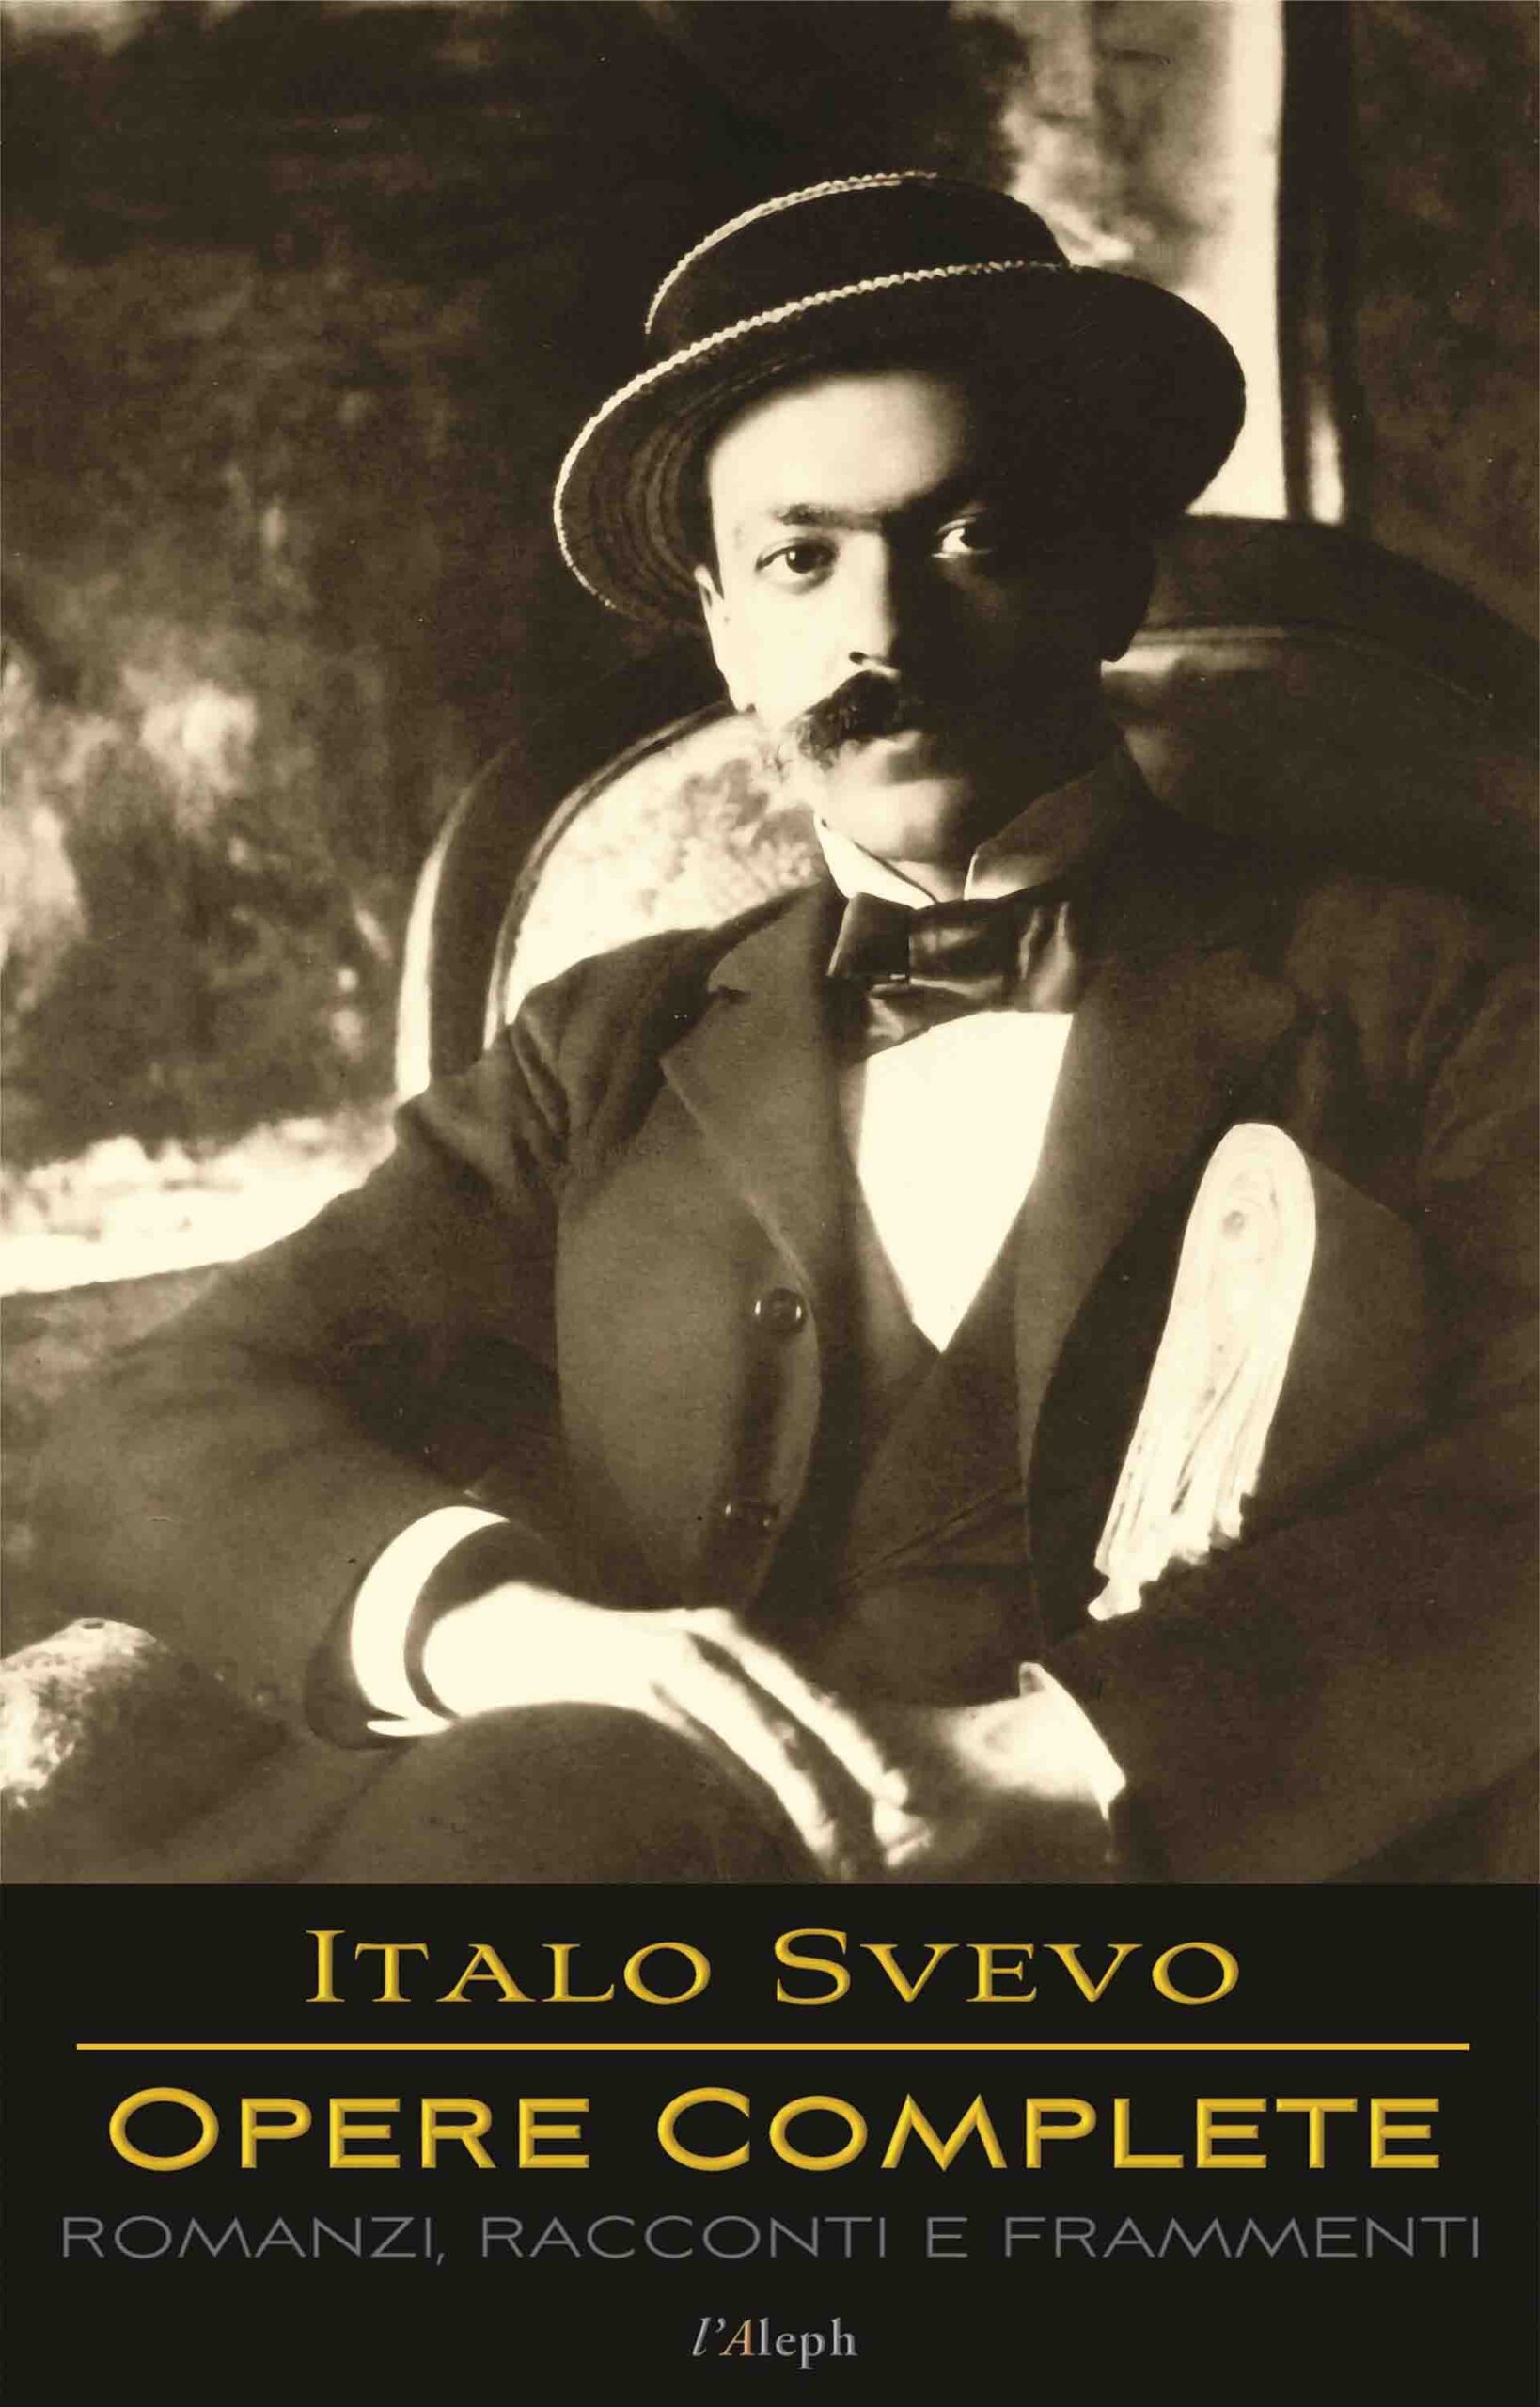 Italo Svevo: Opere Complete – Romanzi, Racconti e Frammenti